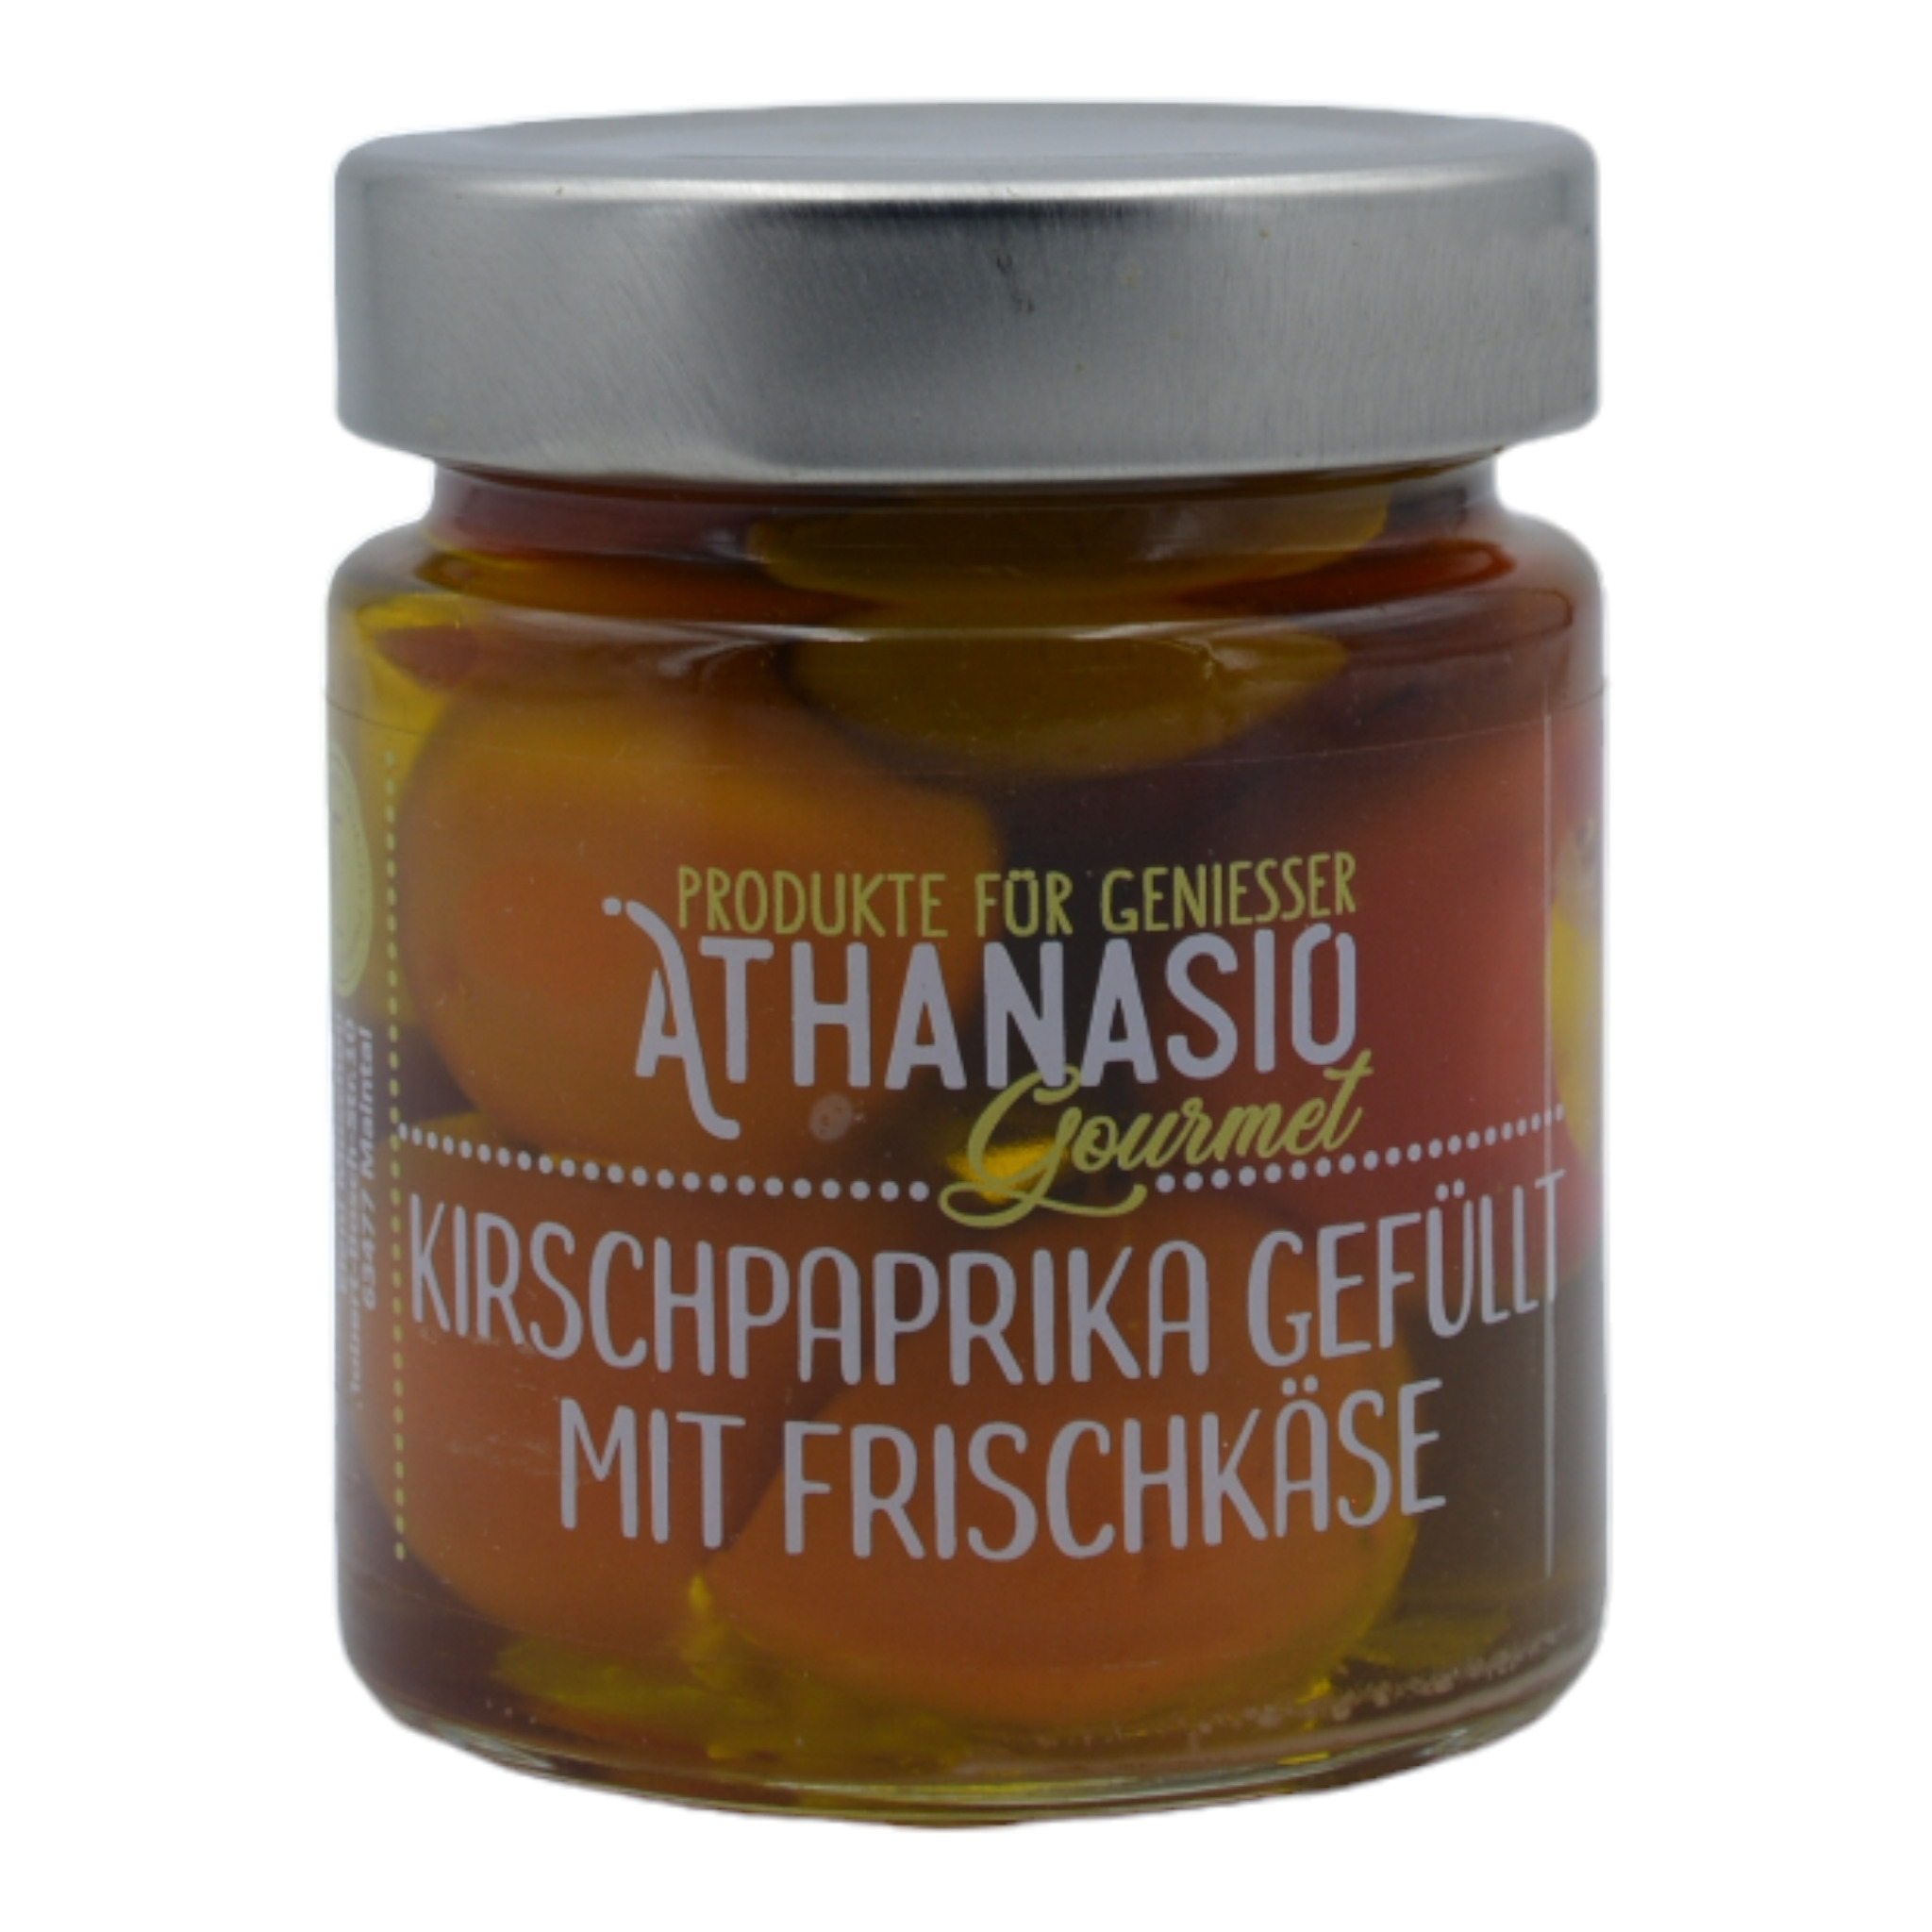 5200250212306 - Athanasio Gourmet Kirschpaprika gefüllt mit Frischkäse f